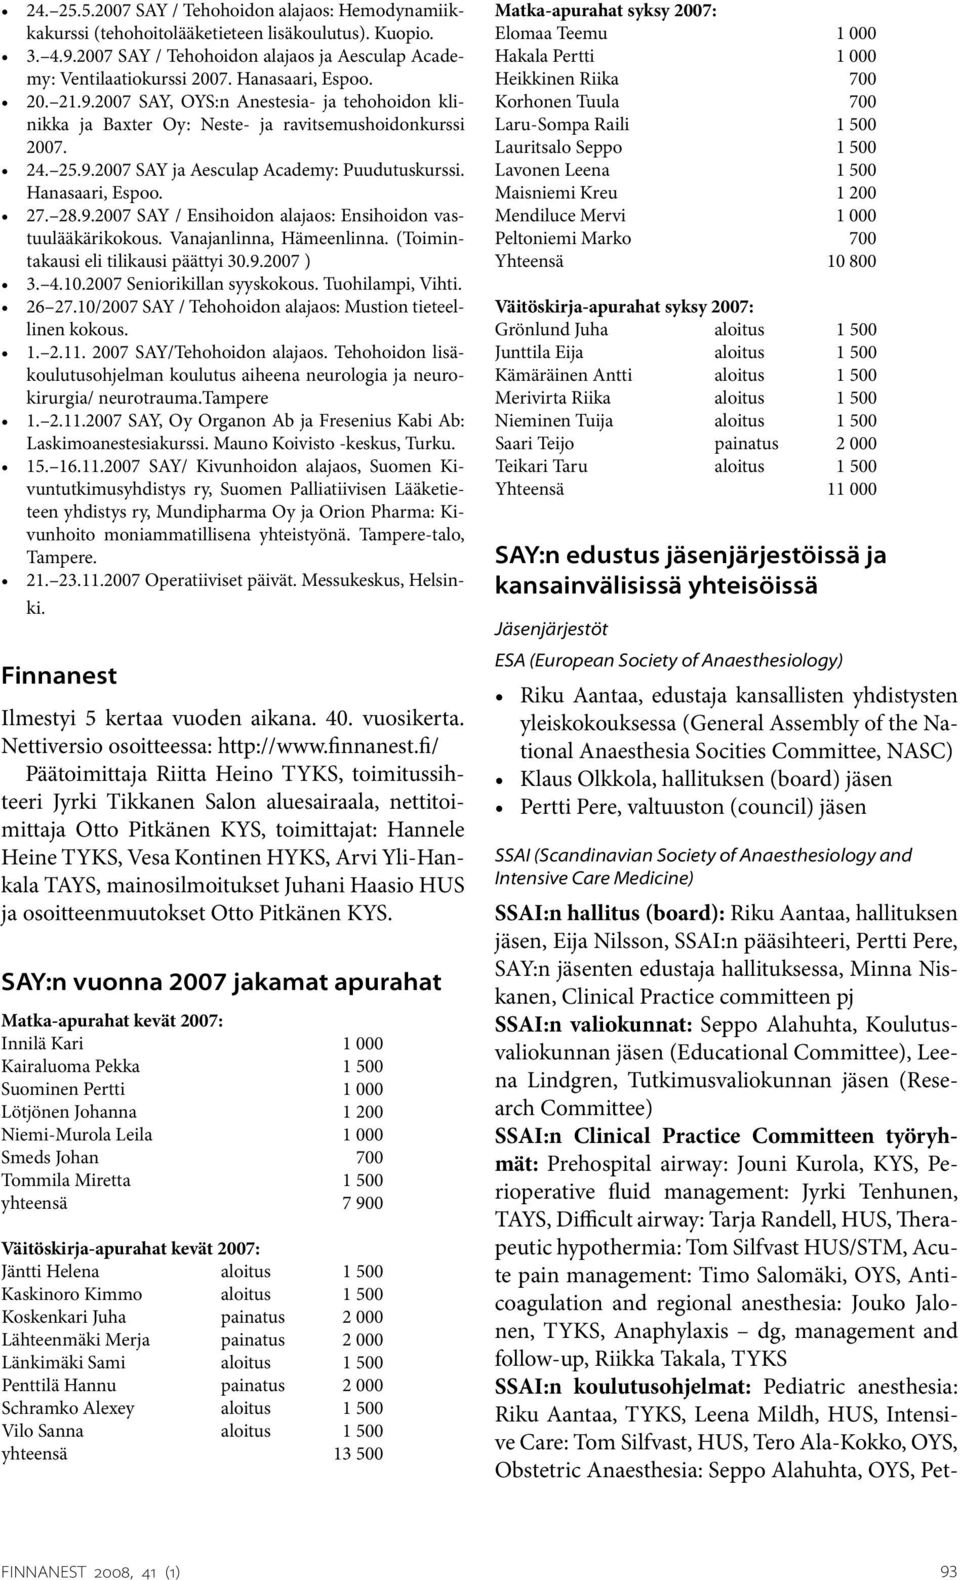 Hanasaari, Espoo. 27. 28.9.2007 SAY / Ensihoidon alajaos: Ensihoidon vastuulääkärikokous. Vanajanlinna, Hämeenlinna. (Toimintakausi eli tilikausi päättyi 30.9.2007 ) 3. 4.10.